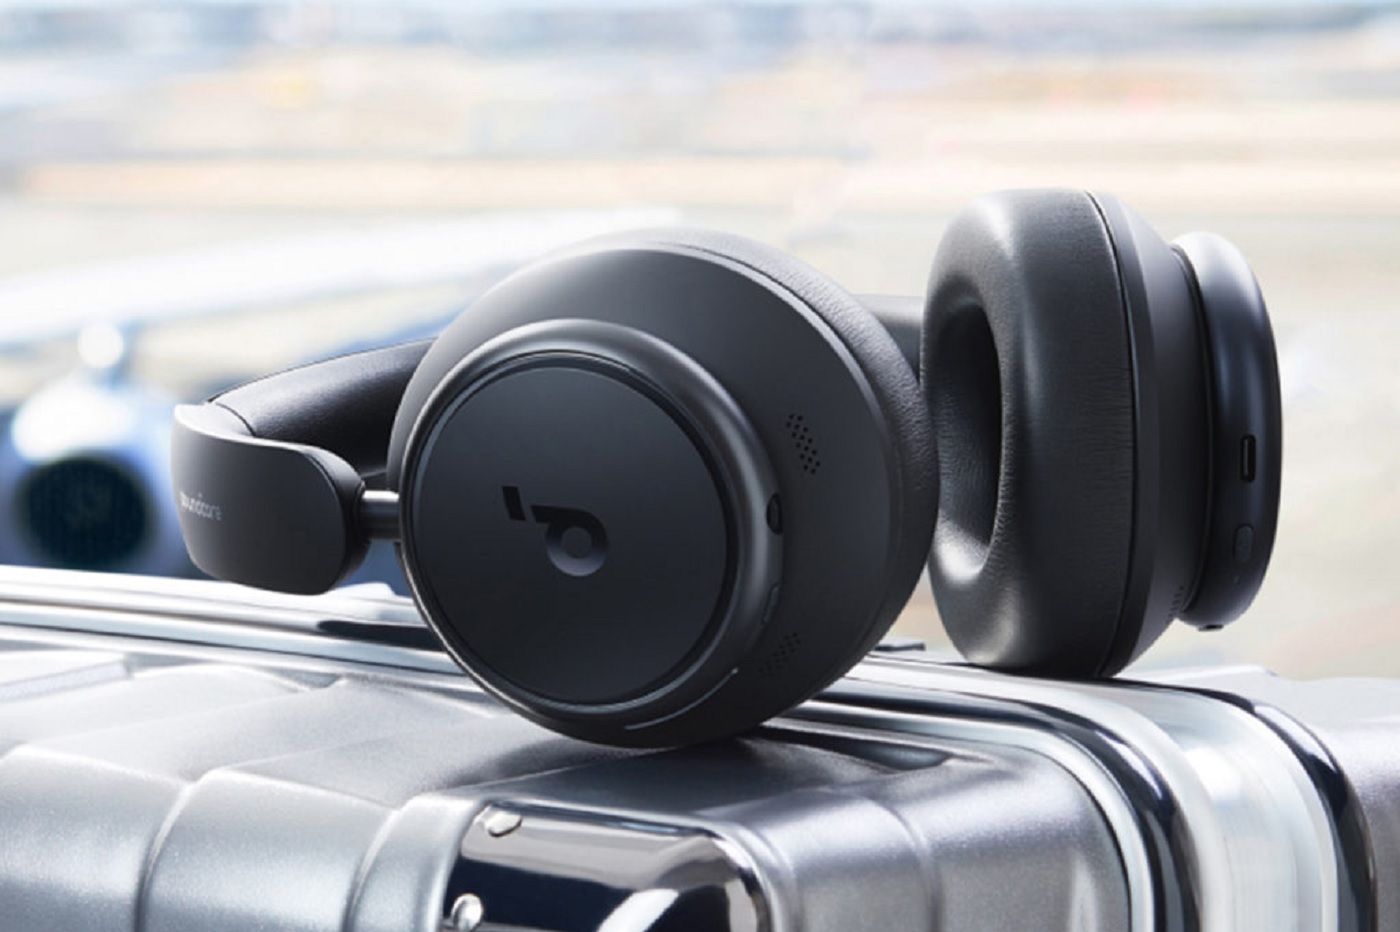 Soundcore lance le casque audio Space Q45, un modèle ANC à moins de 150 euros